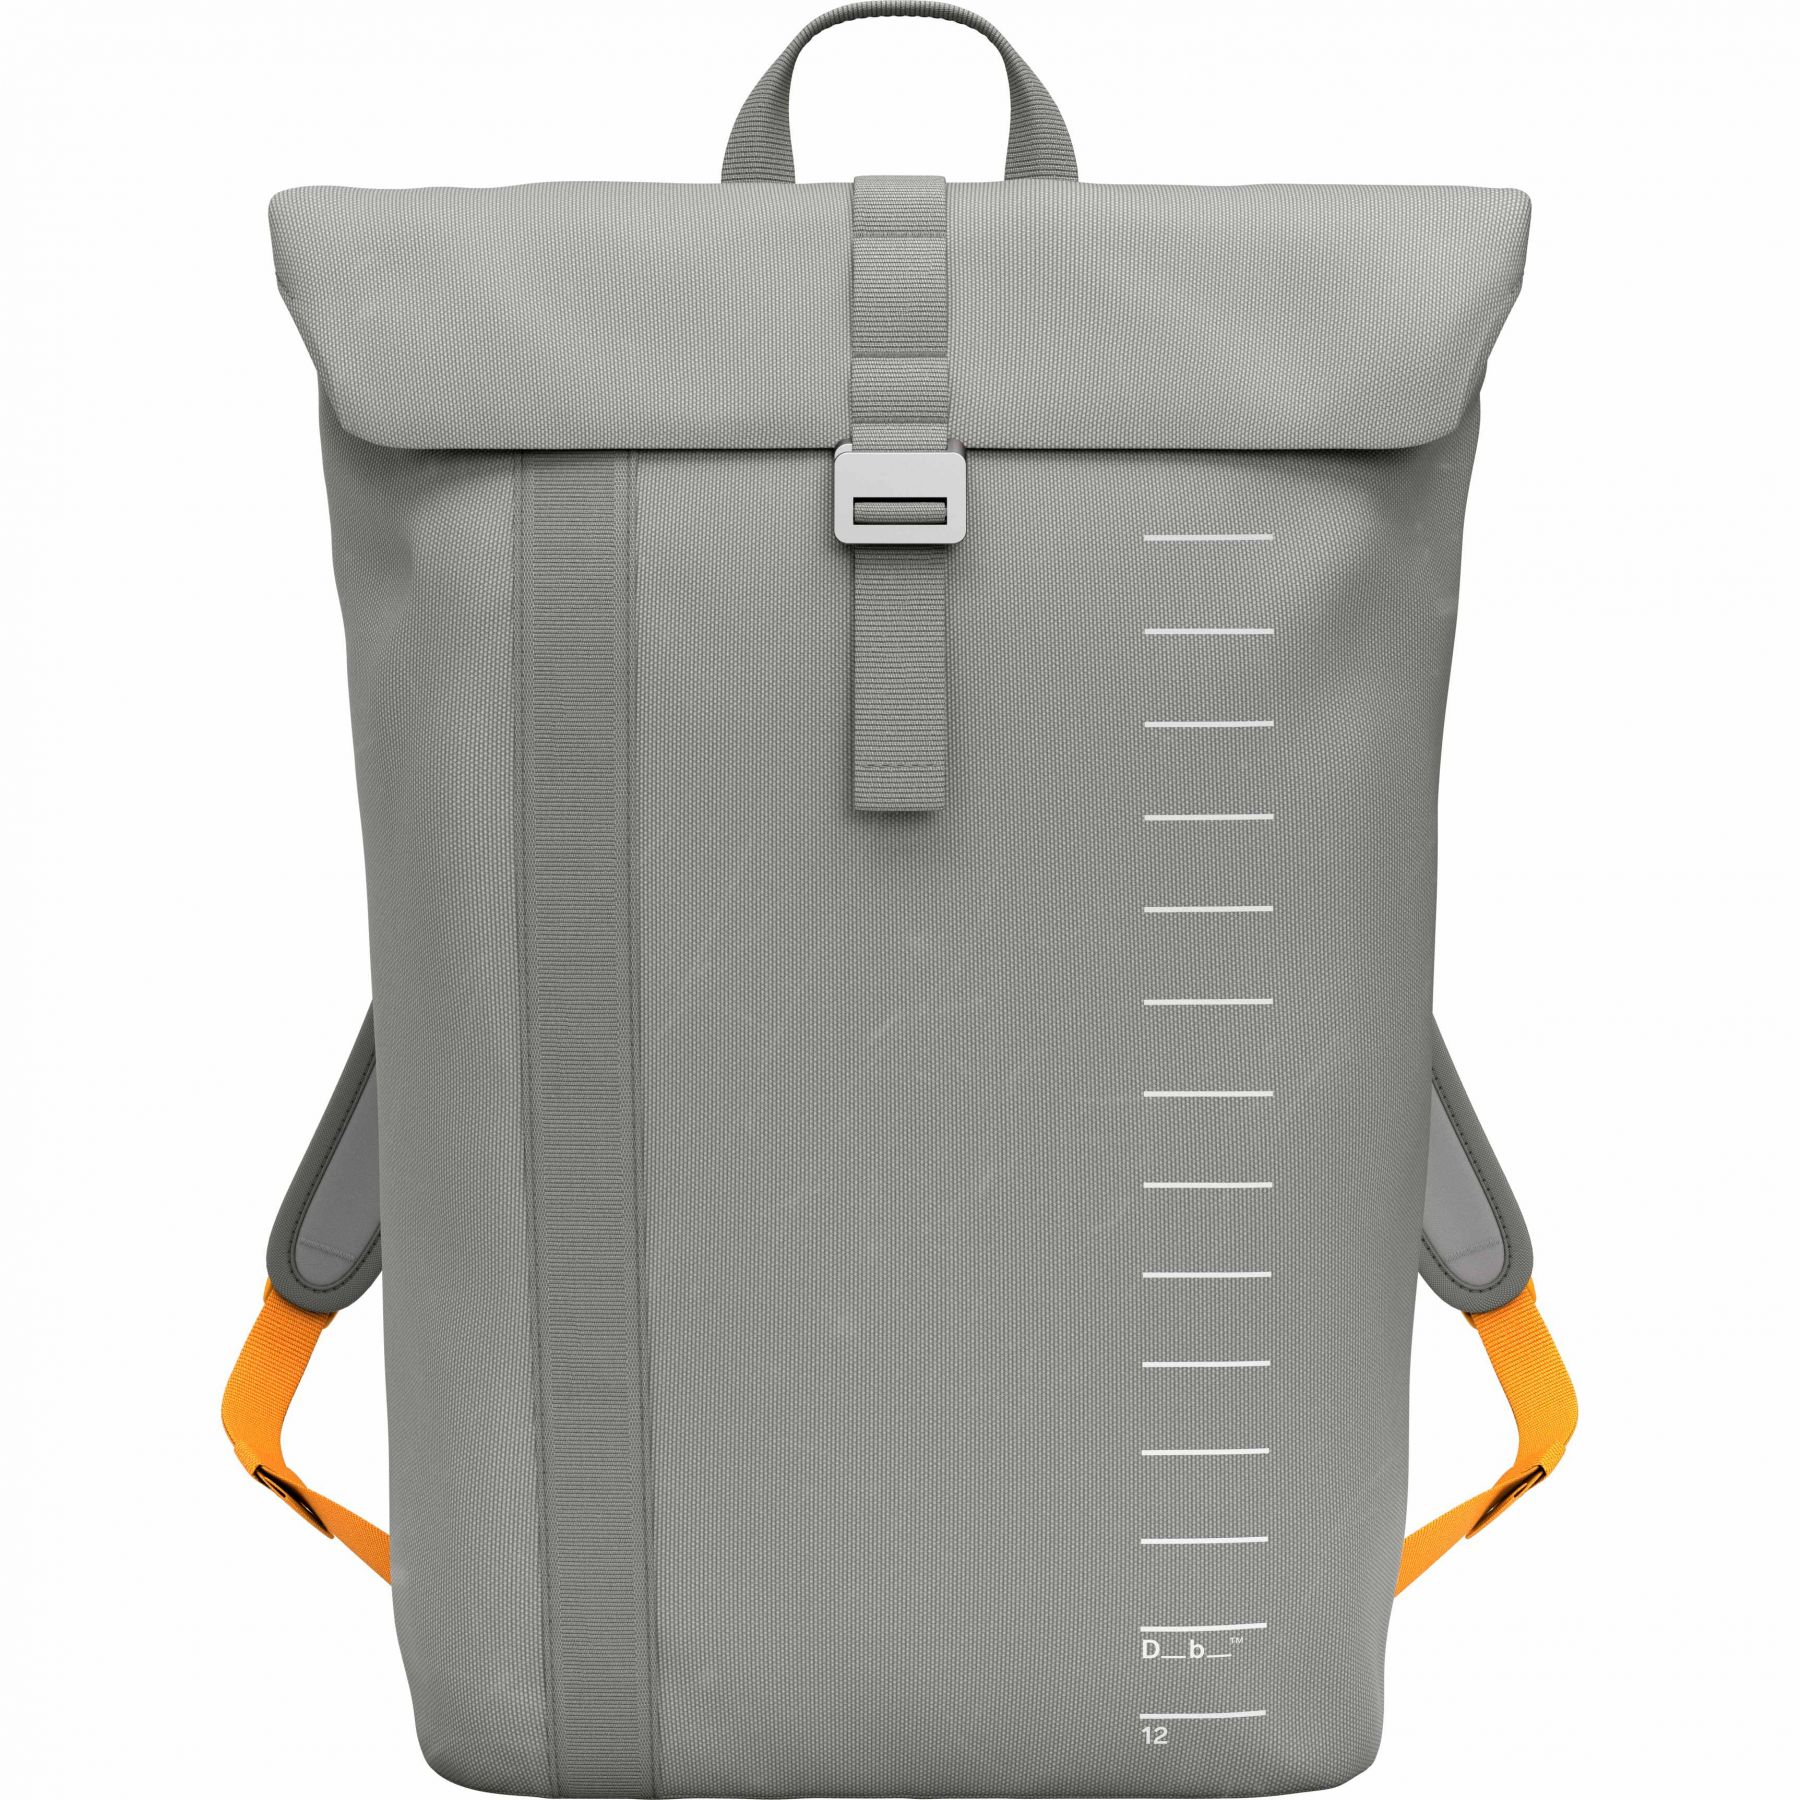 Brug Db Essential Backpack, 12L, sand grey til en forbedret oplevelse